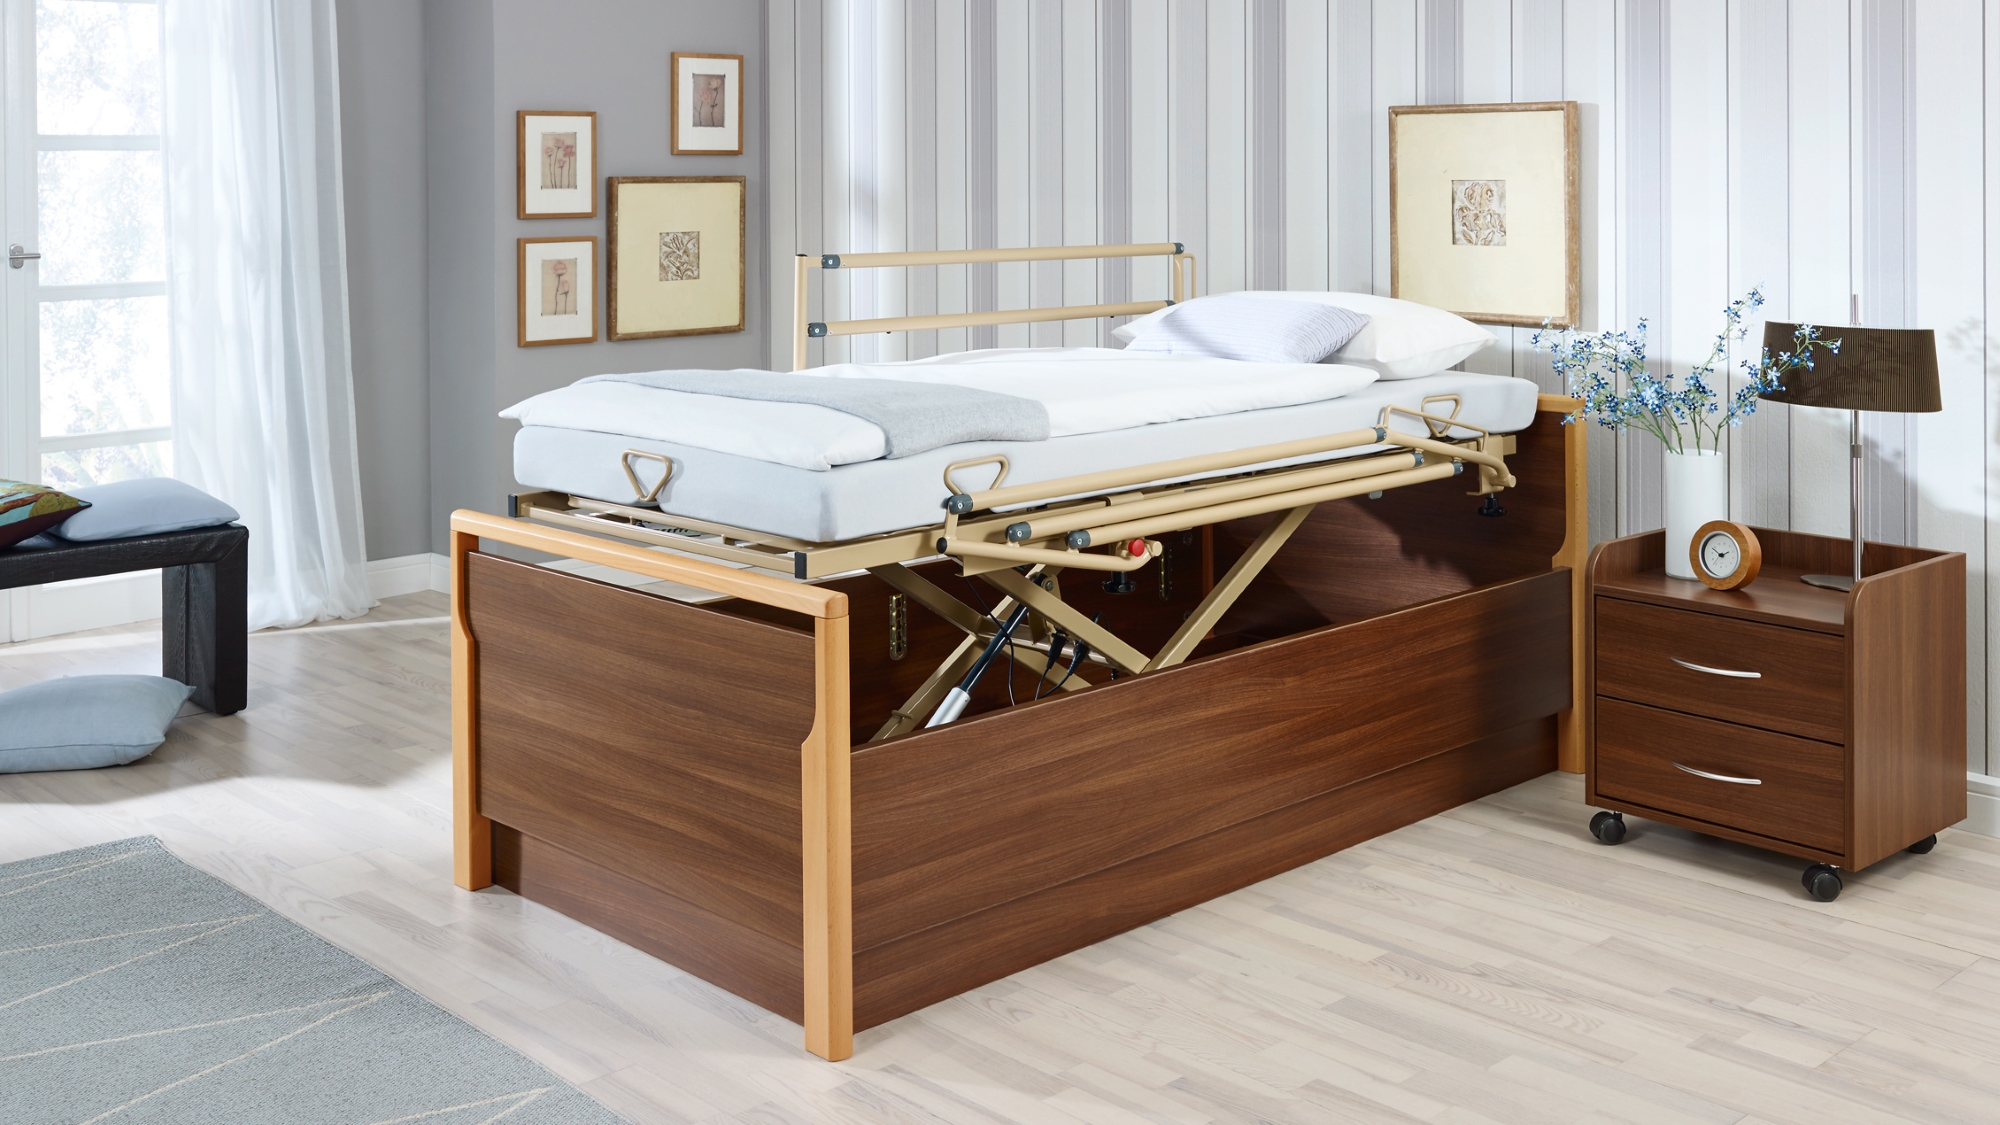 Bett und Nachttisch aus Holz. Ein nach oben gefahrener Betteinsatz zeigt an, dass die Höhe verstellbar ist.